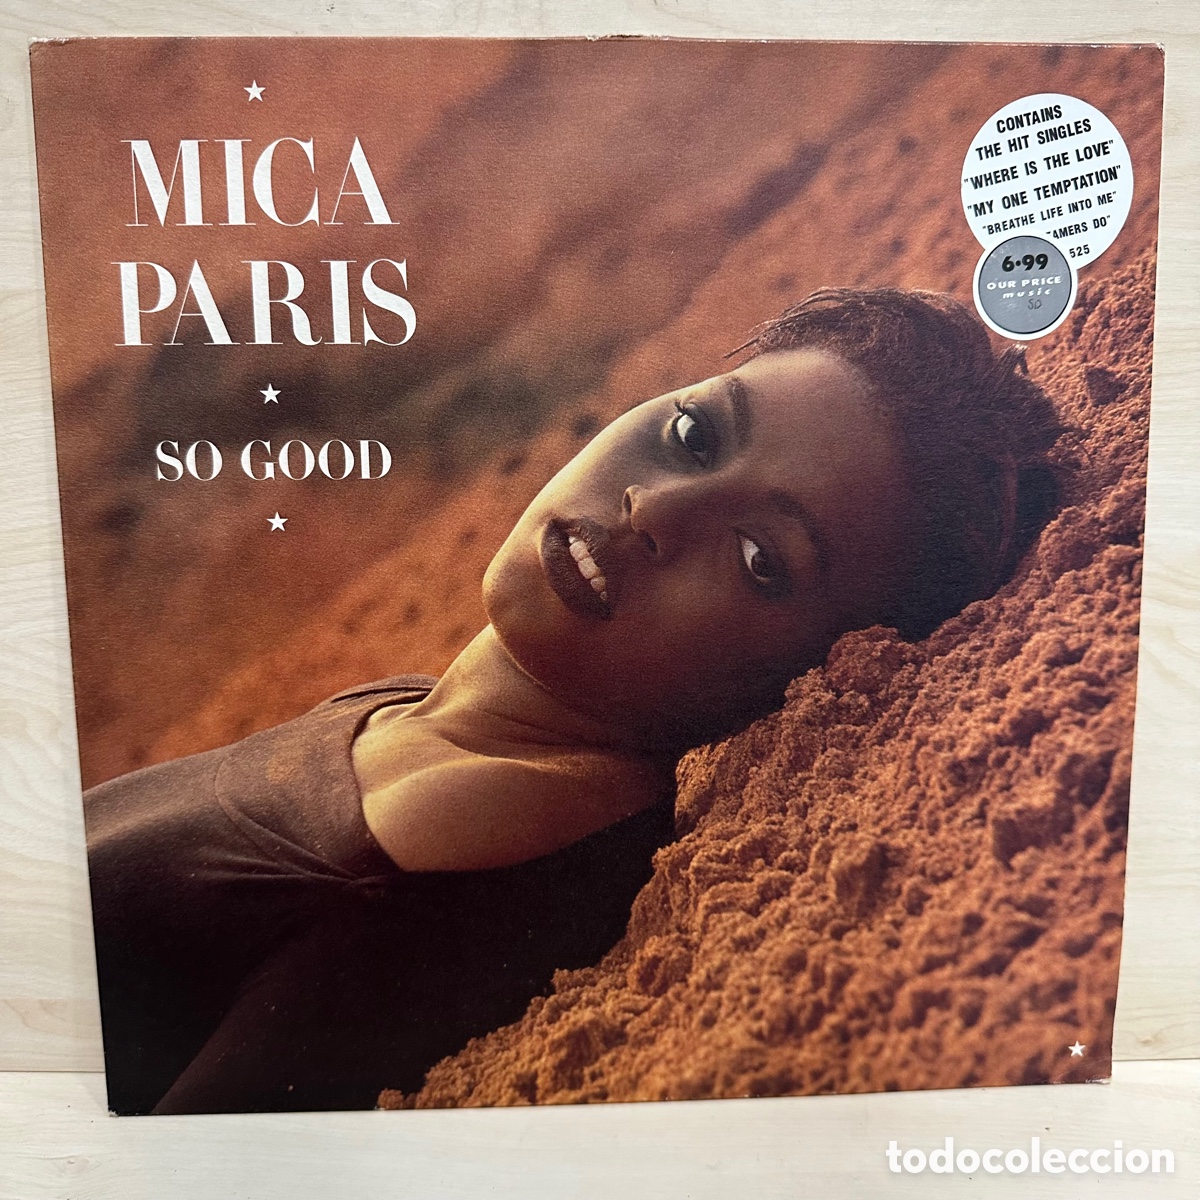 mica paris so good (lp, album) 1989/uk Compra venta en todocoleccion